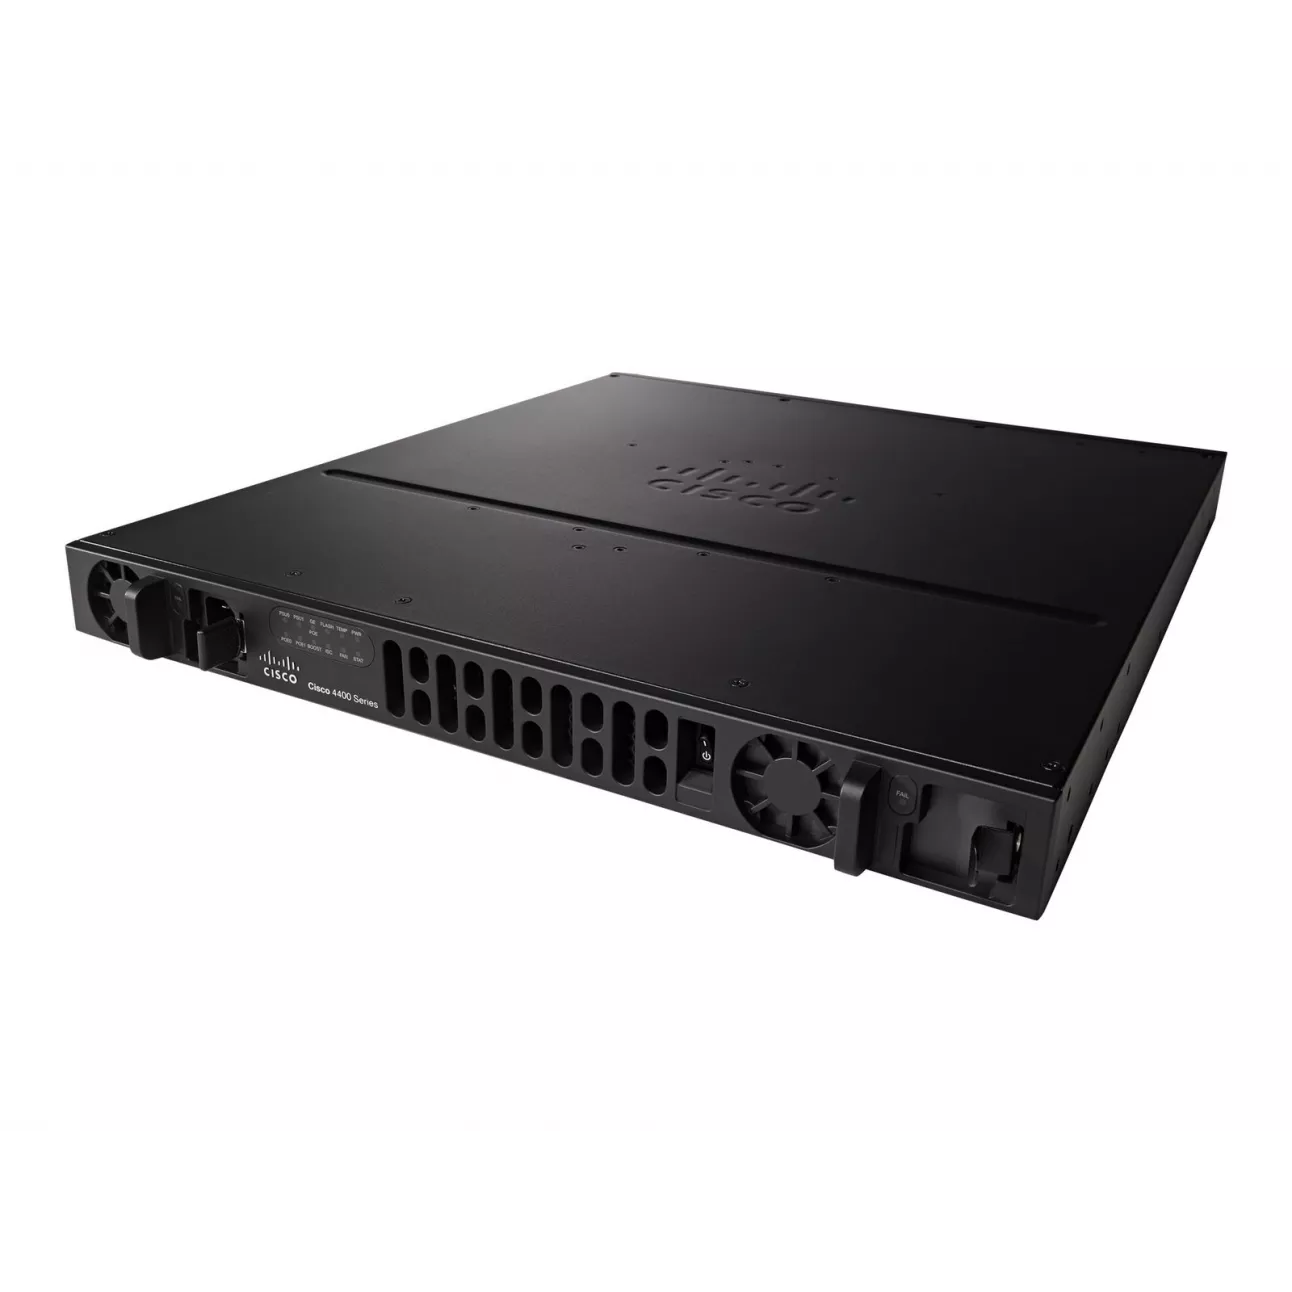 Cisco ISR4431 - Маршрутизатор, 4 комбо порта 10/100/1000BaseT/SFP, 2 порта PoE, 3 слота NIM, 1 слот ISC, с функционалом Boost Throughput